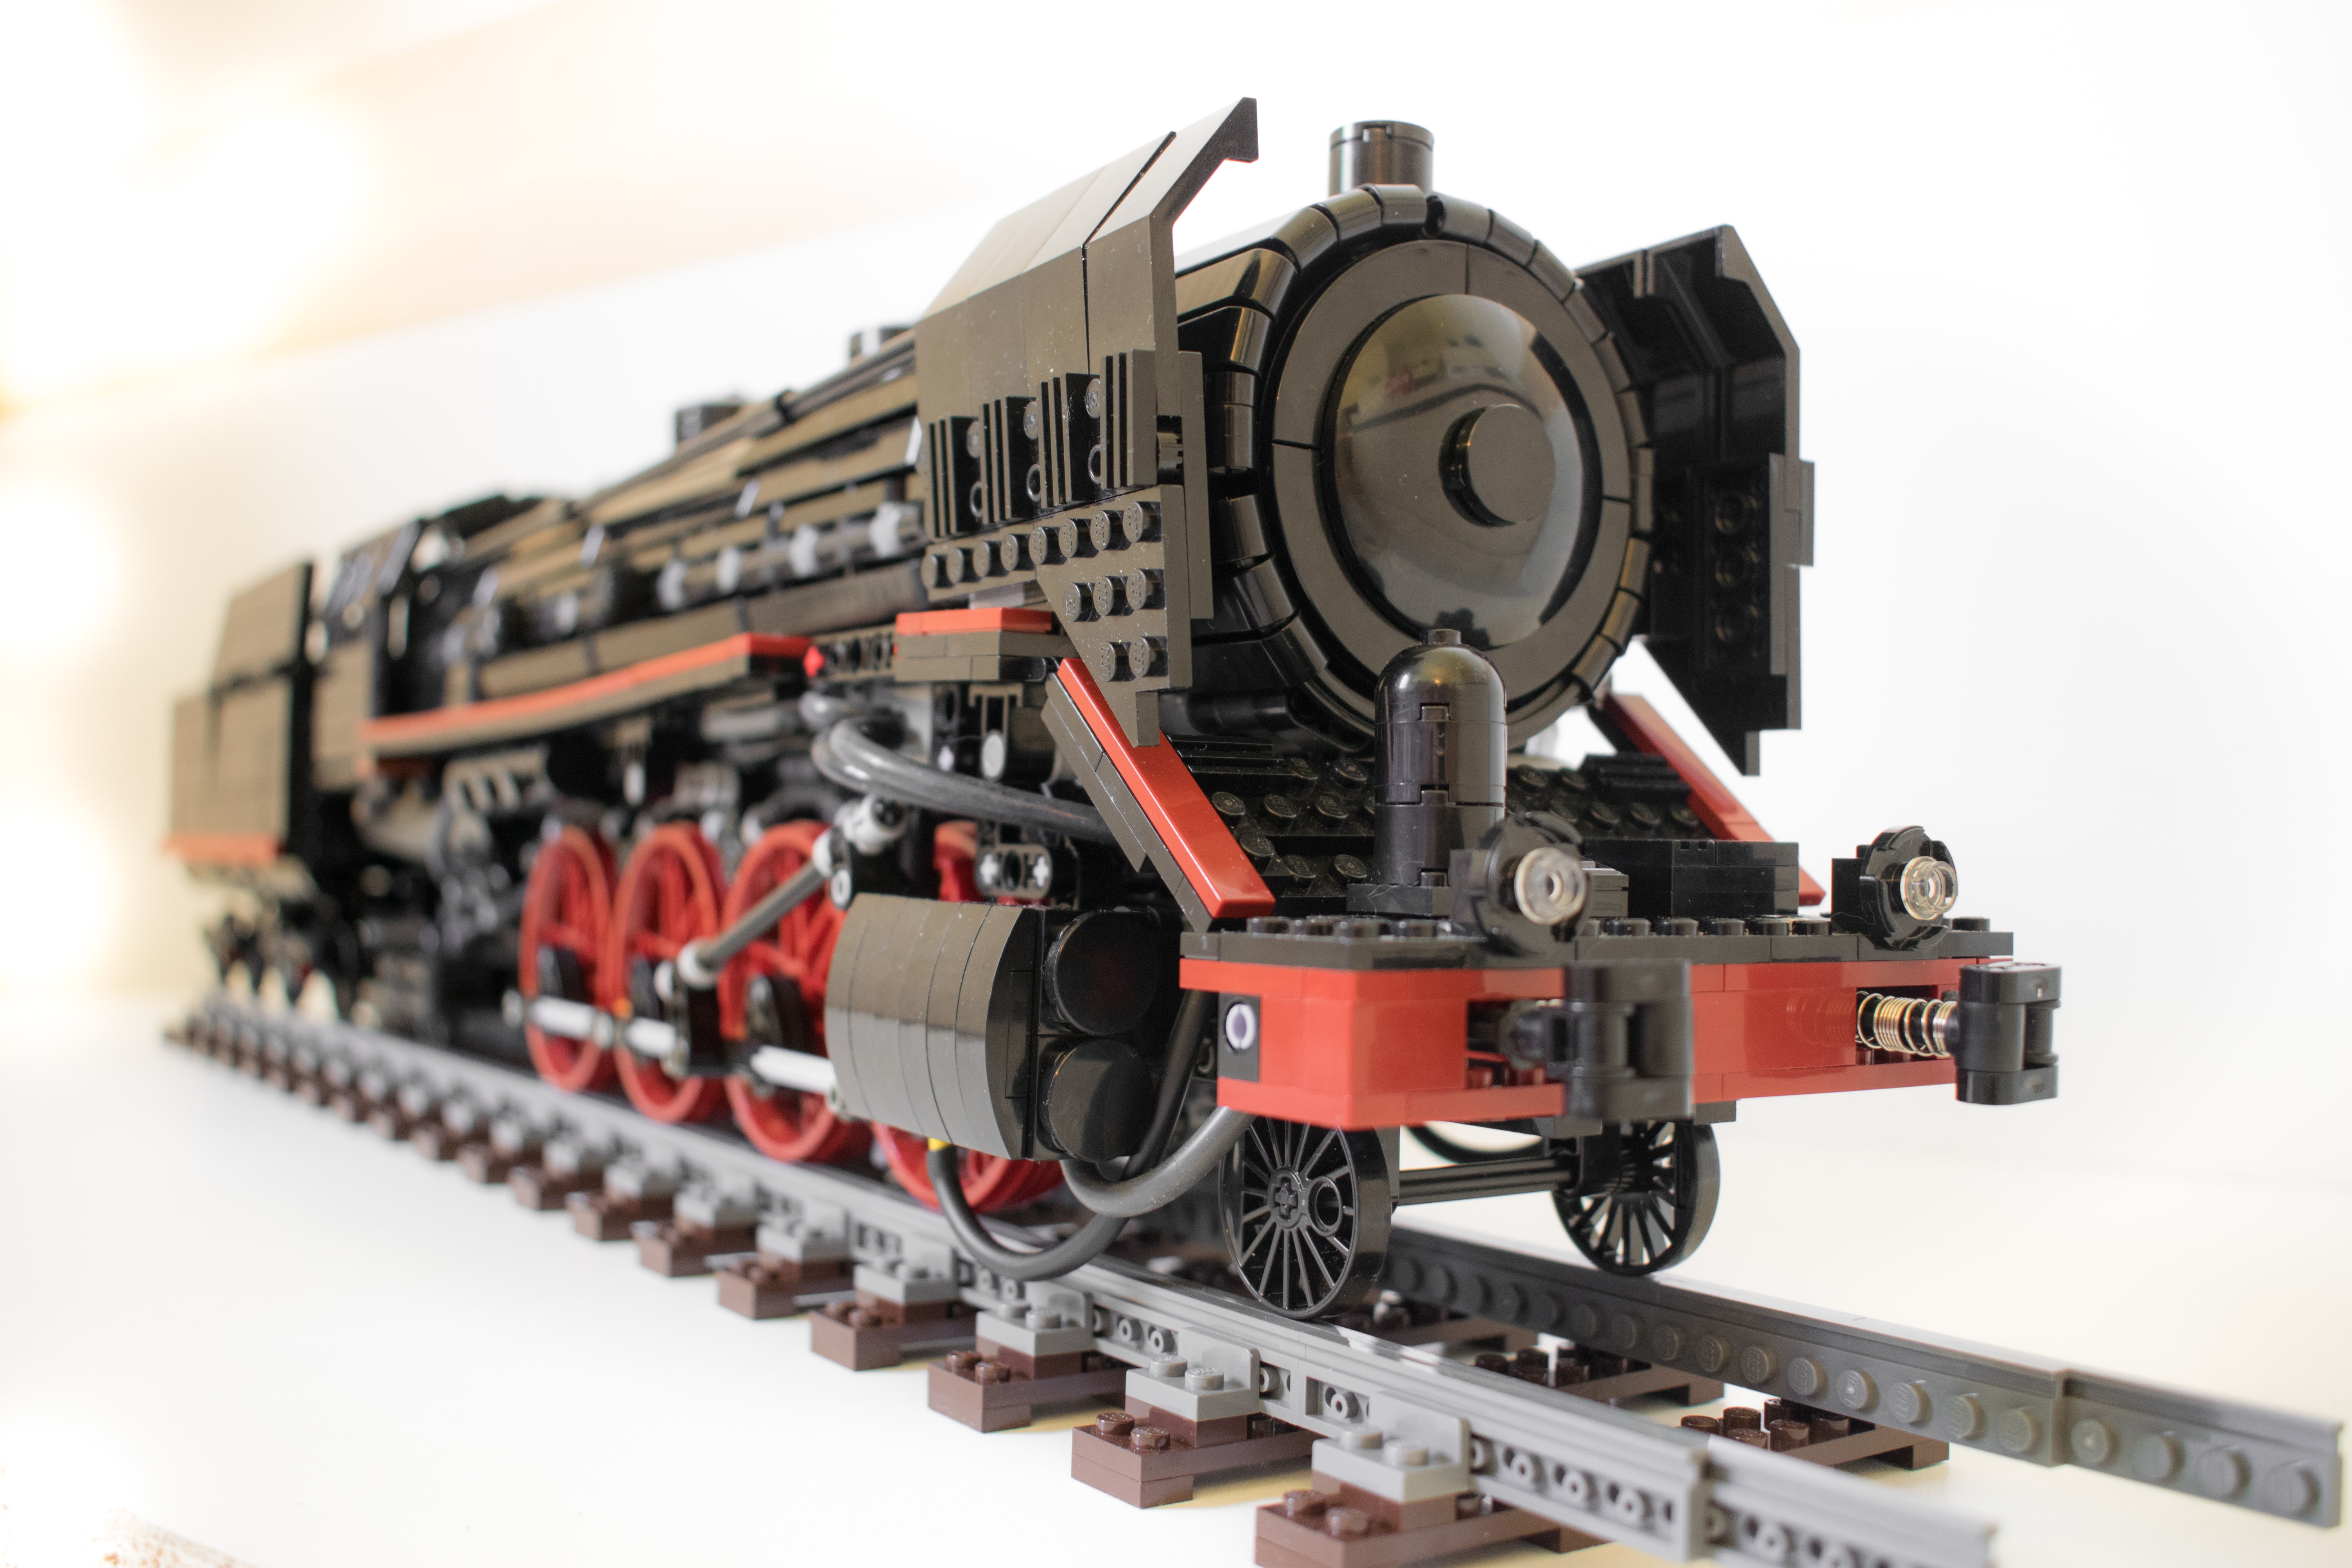 1x Lego Dachstein Black 6x6 Slash Stone 33 ° Brick Train Railway 4509